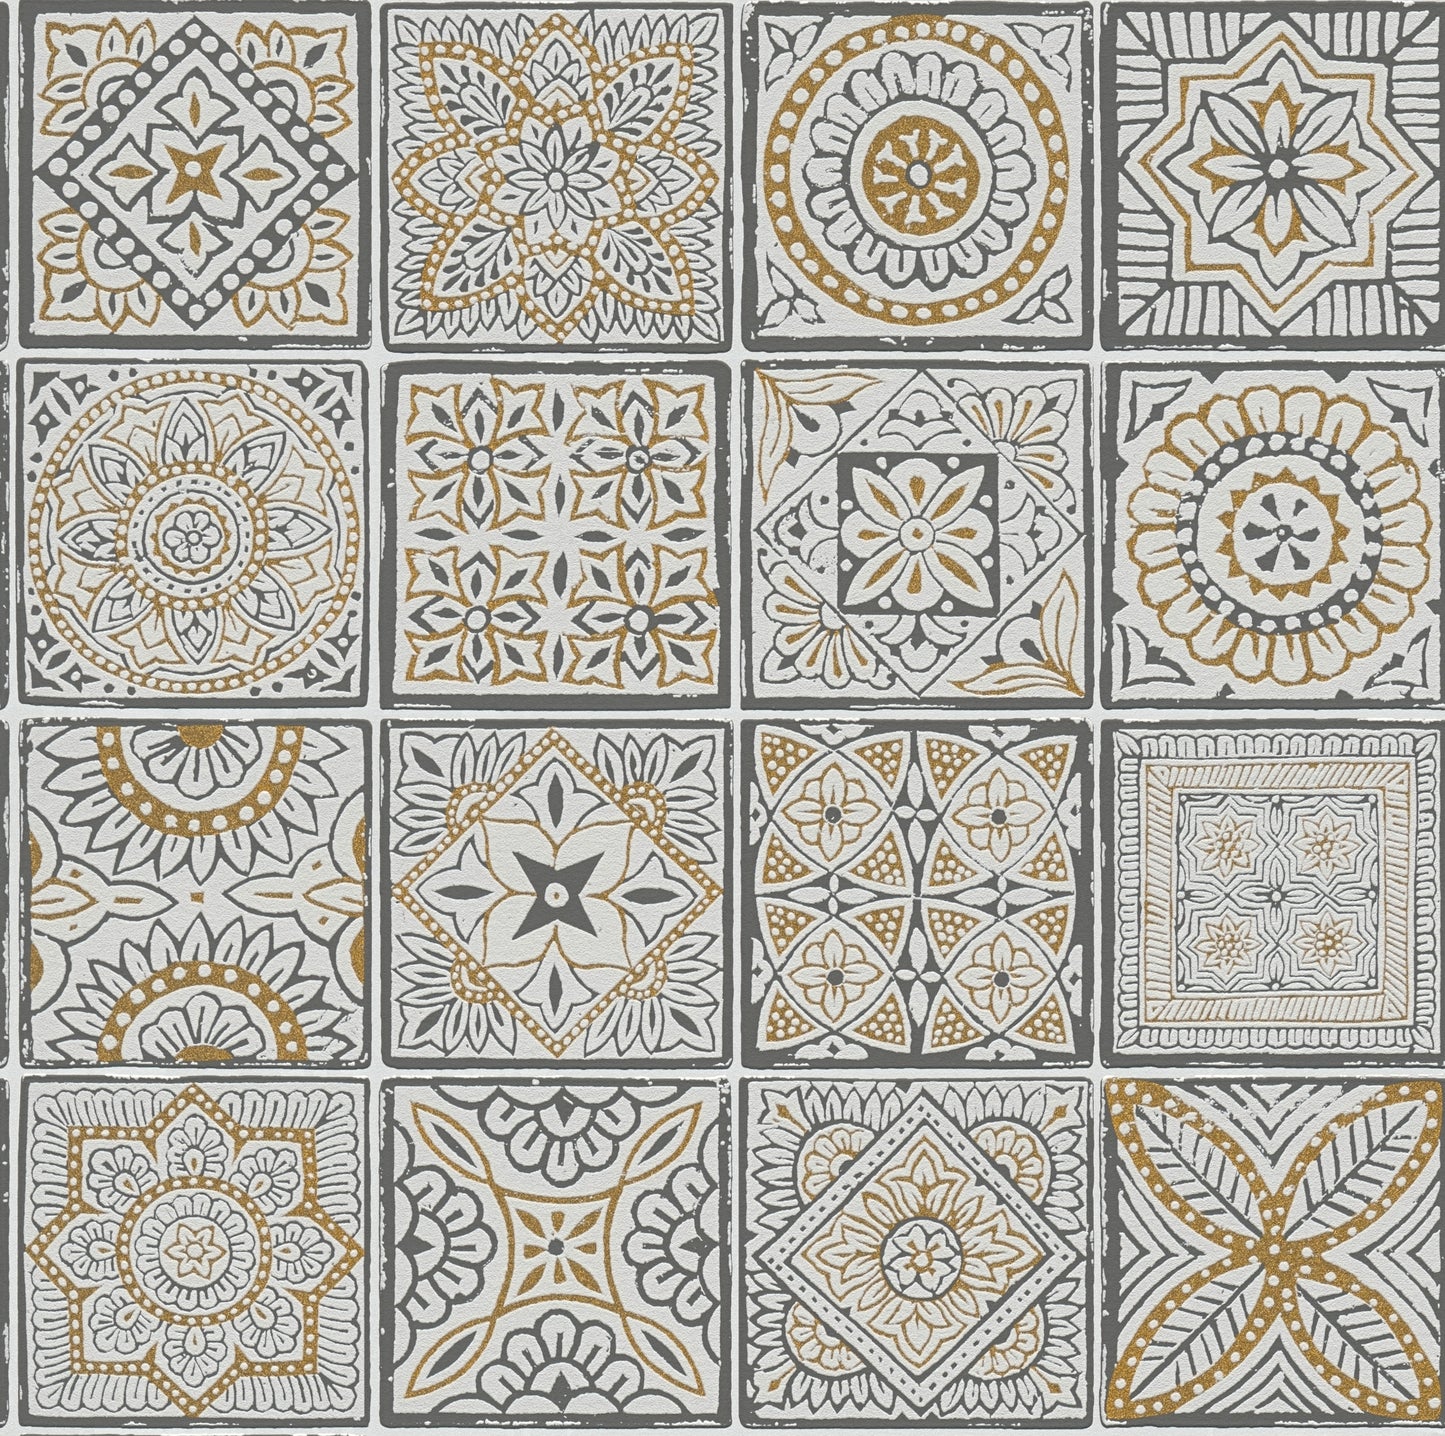 3D Vintage tiles